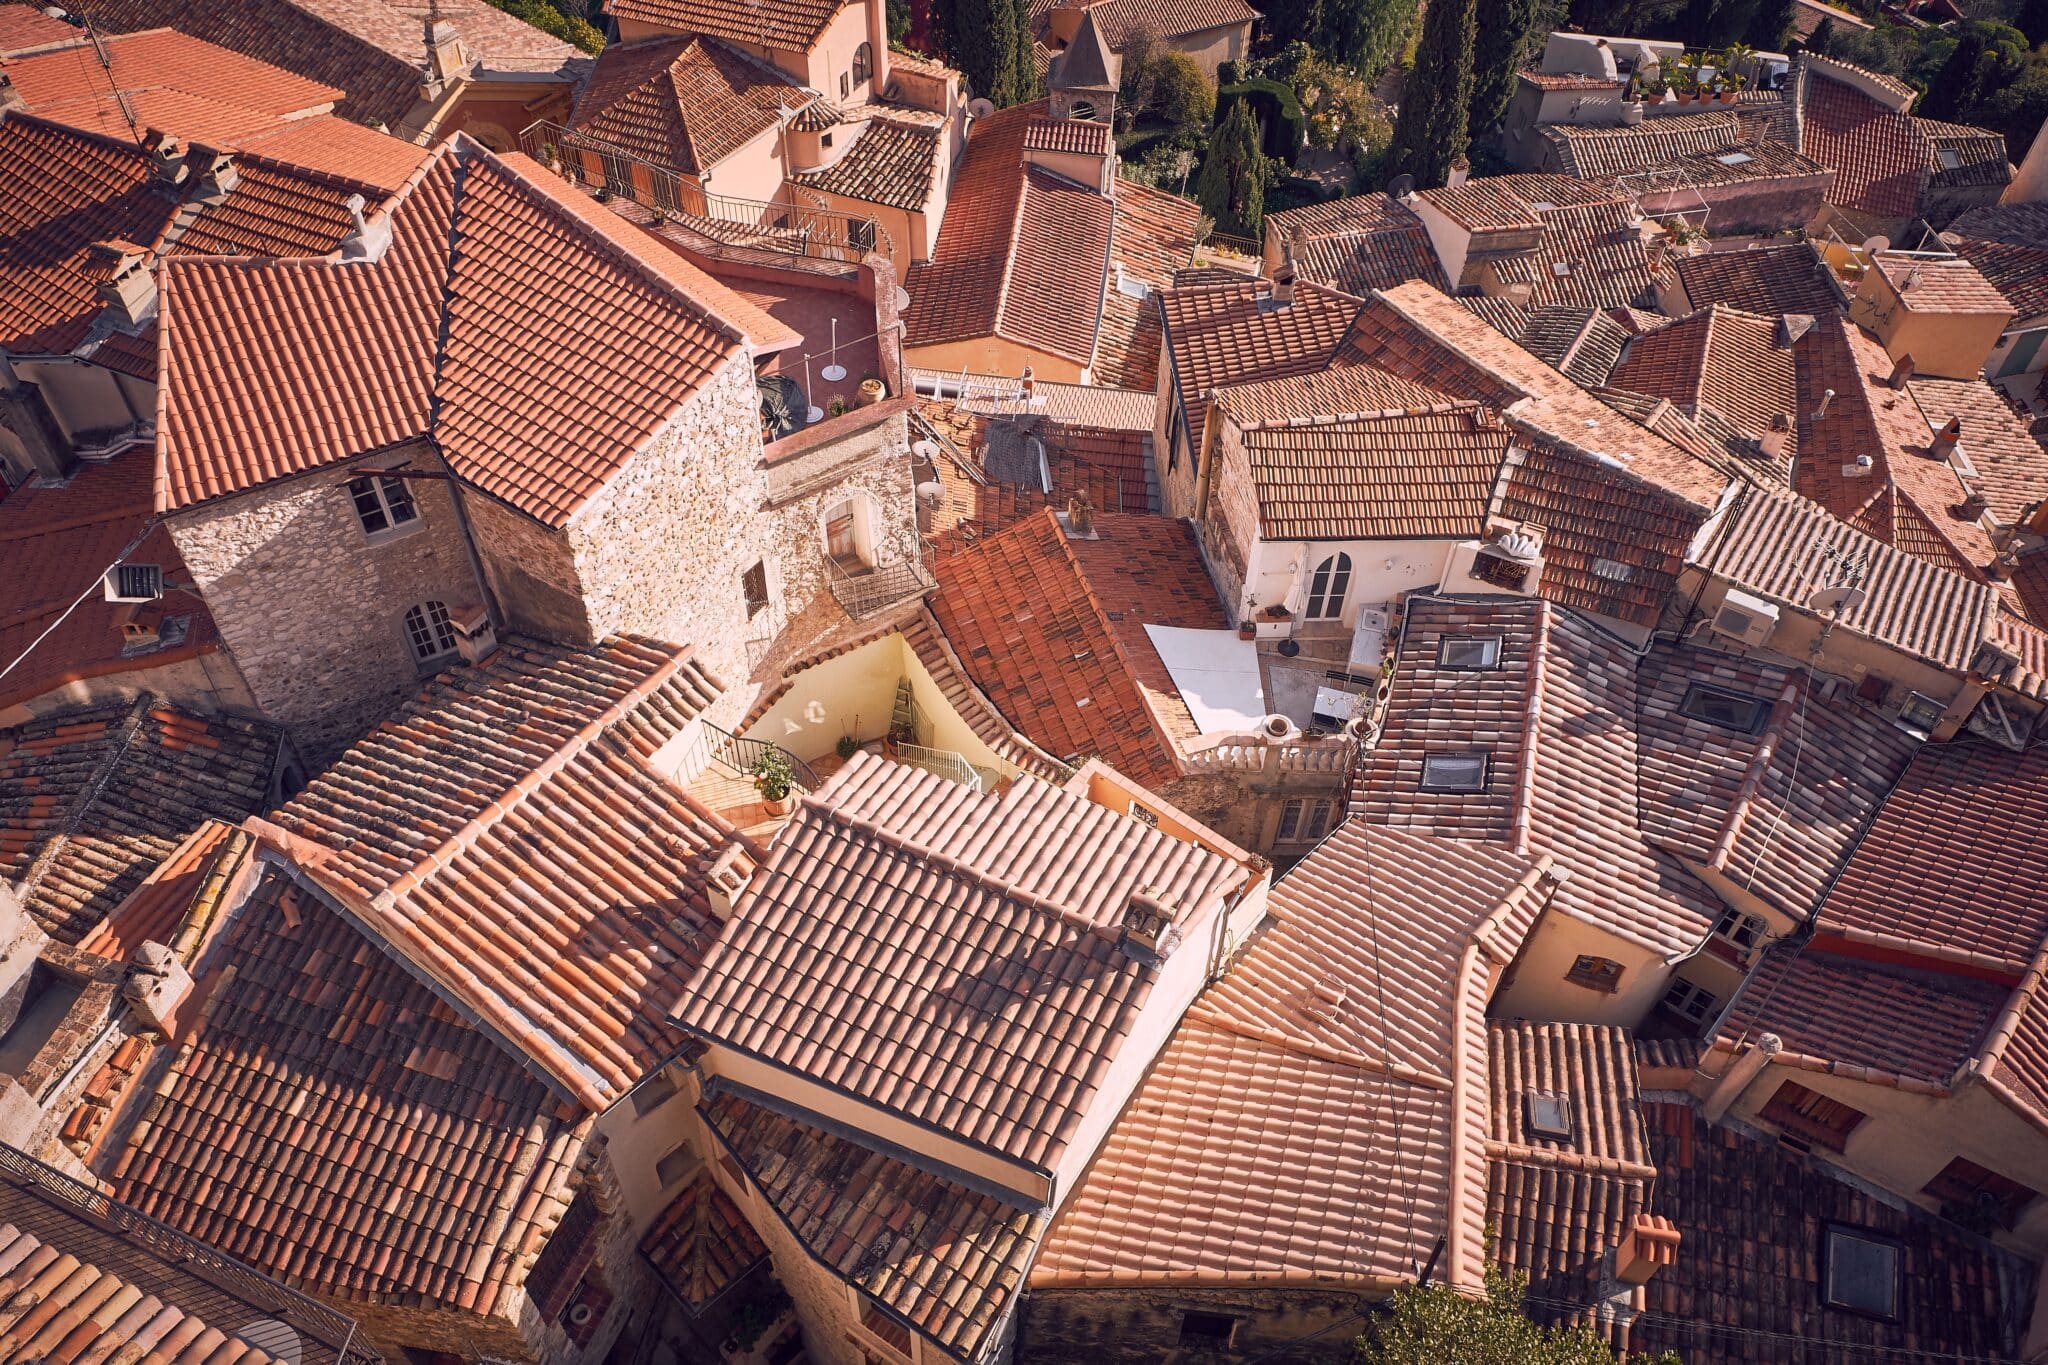 Vue aérienne de toits de tuiles rouges dans une commune.